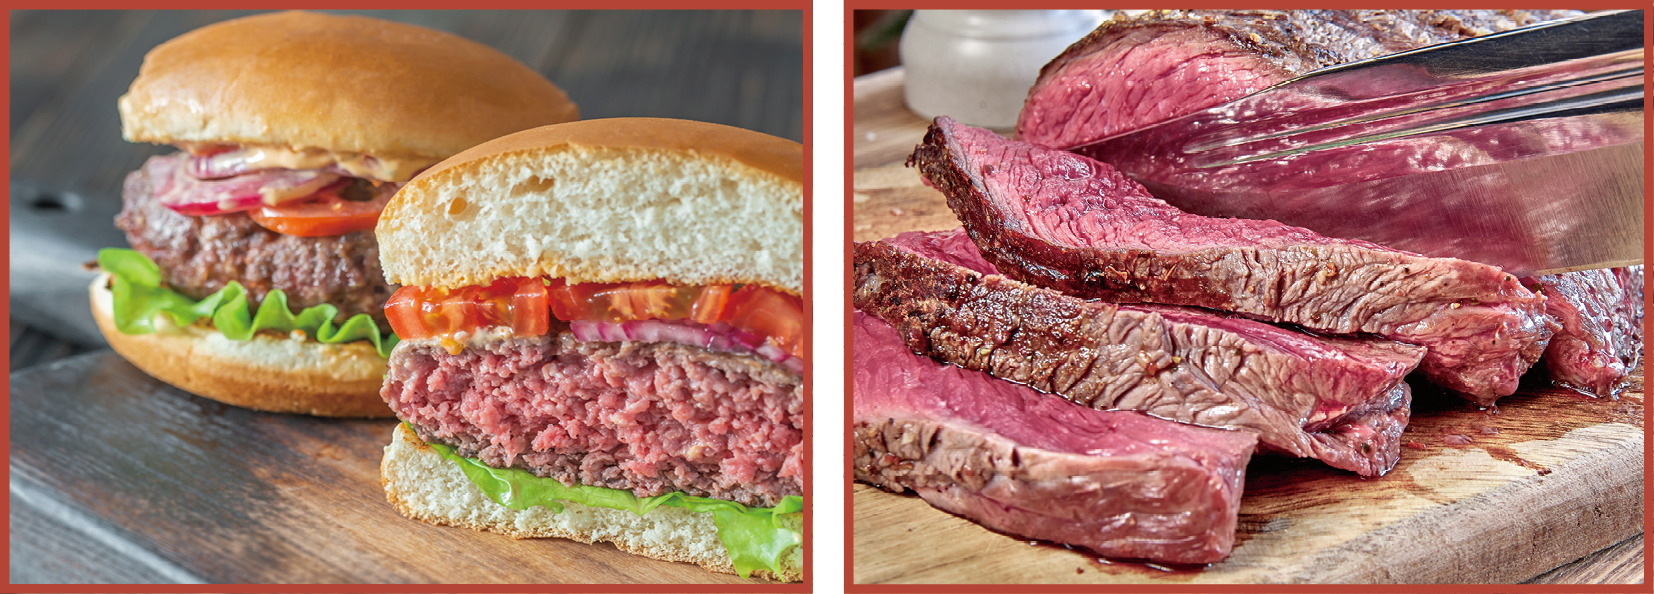 消費者不宜進食未經煮熟的漢堡牛肉或牛扒，以免食物中毒